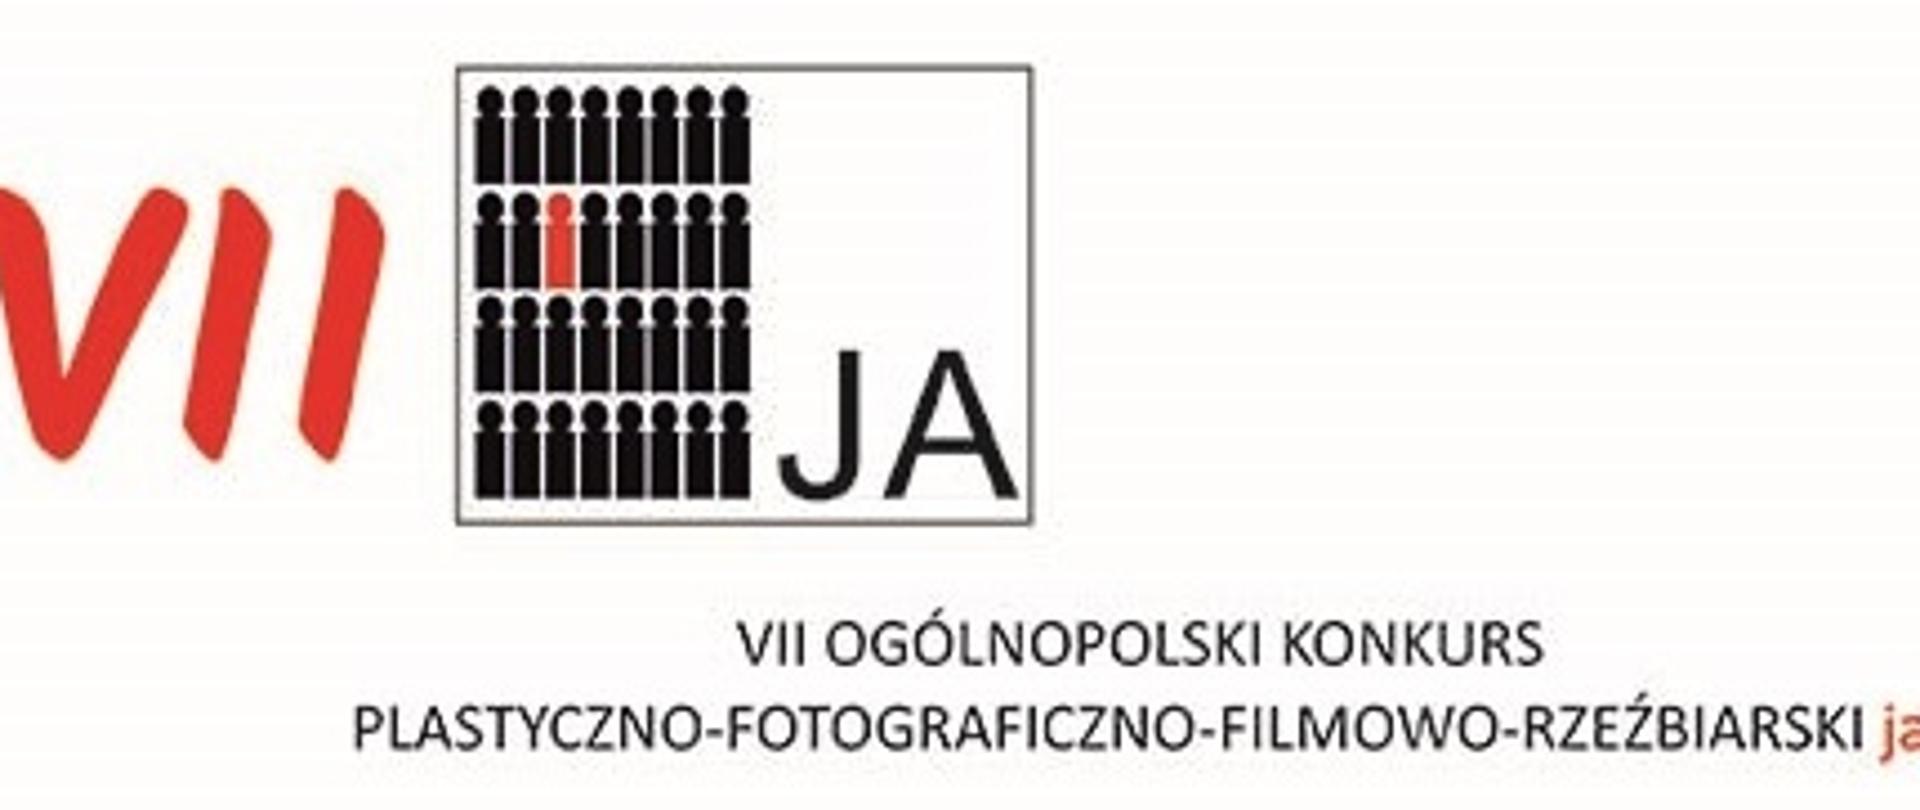 VII Ogólnopolski Konkurs Plastyczno - Fotograficzno - Filmowo - Rzeźbiarski "Ja"